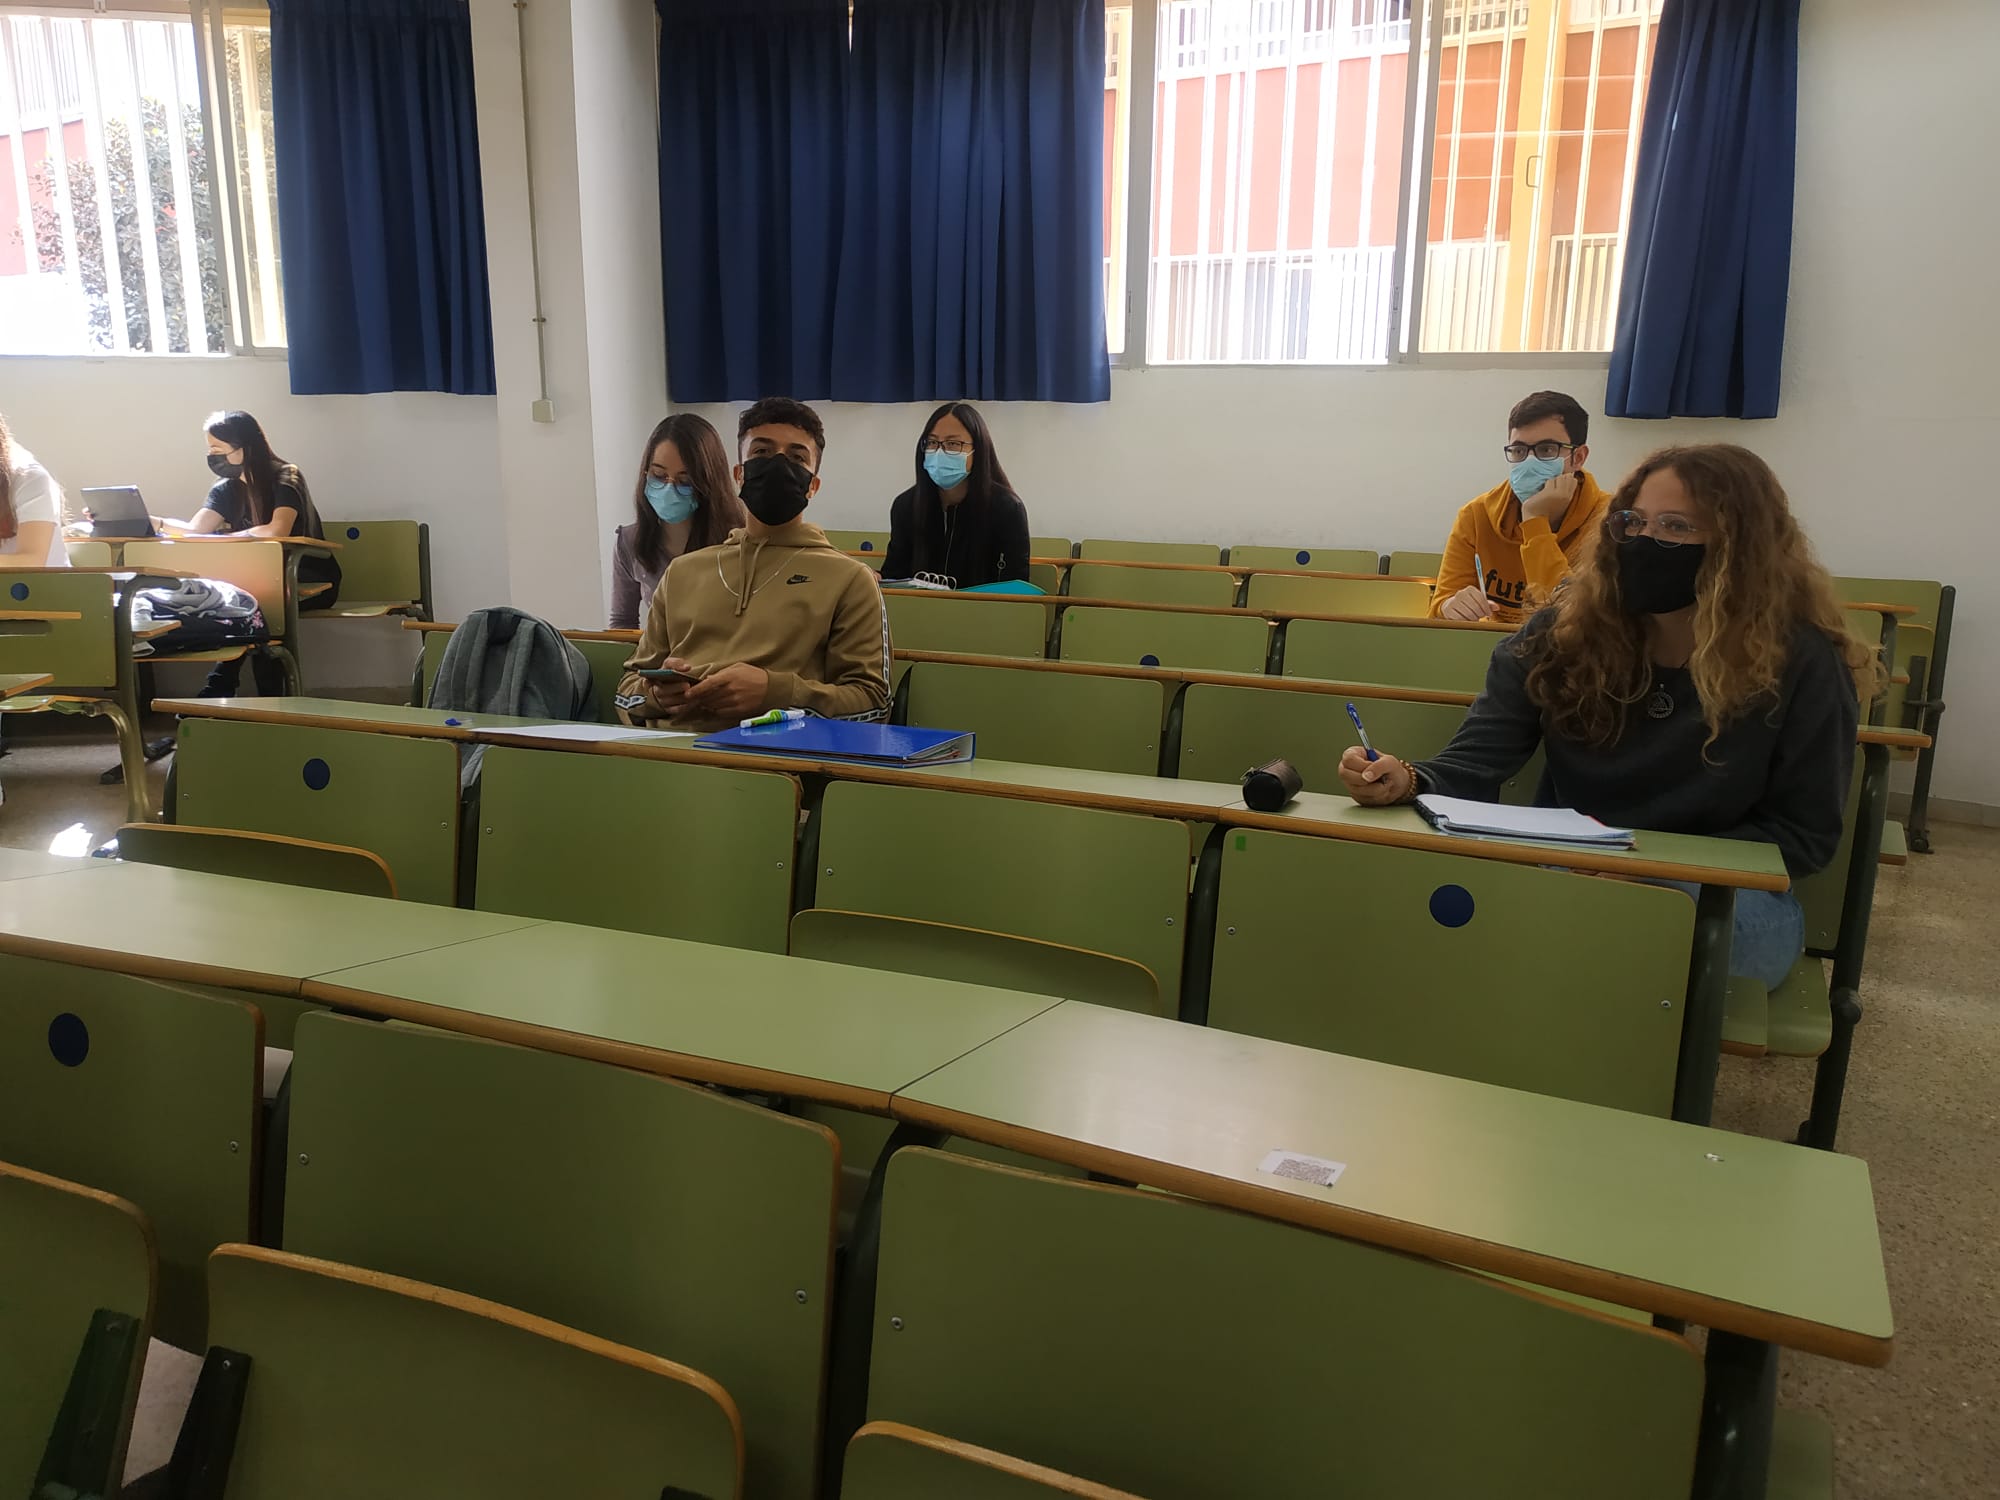 La Universidad de Málaga ha retomado las clases presenciales, pasando a la docencia bimodal, este lunes tras cinco meses de docencia telemática.